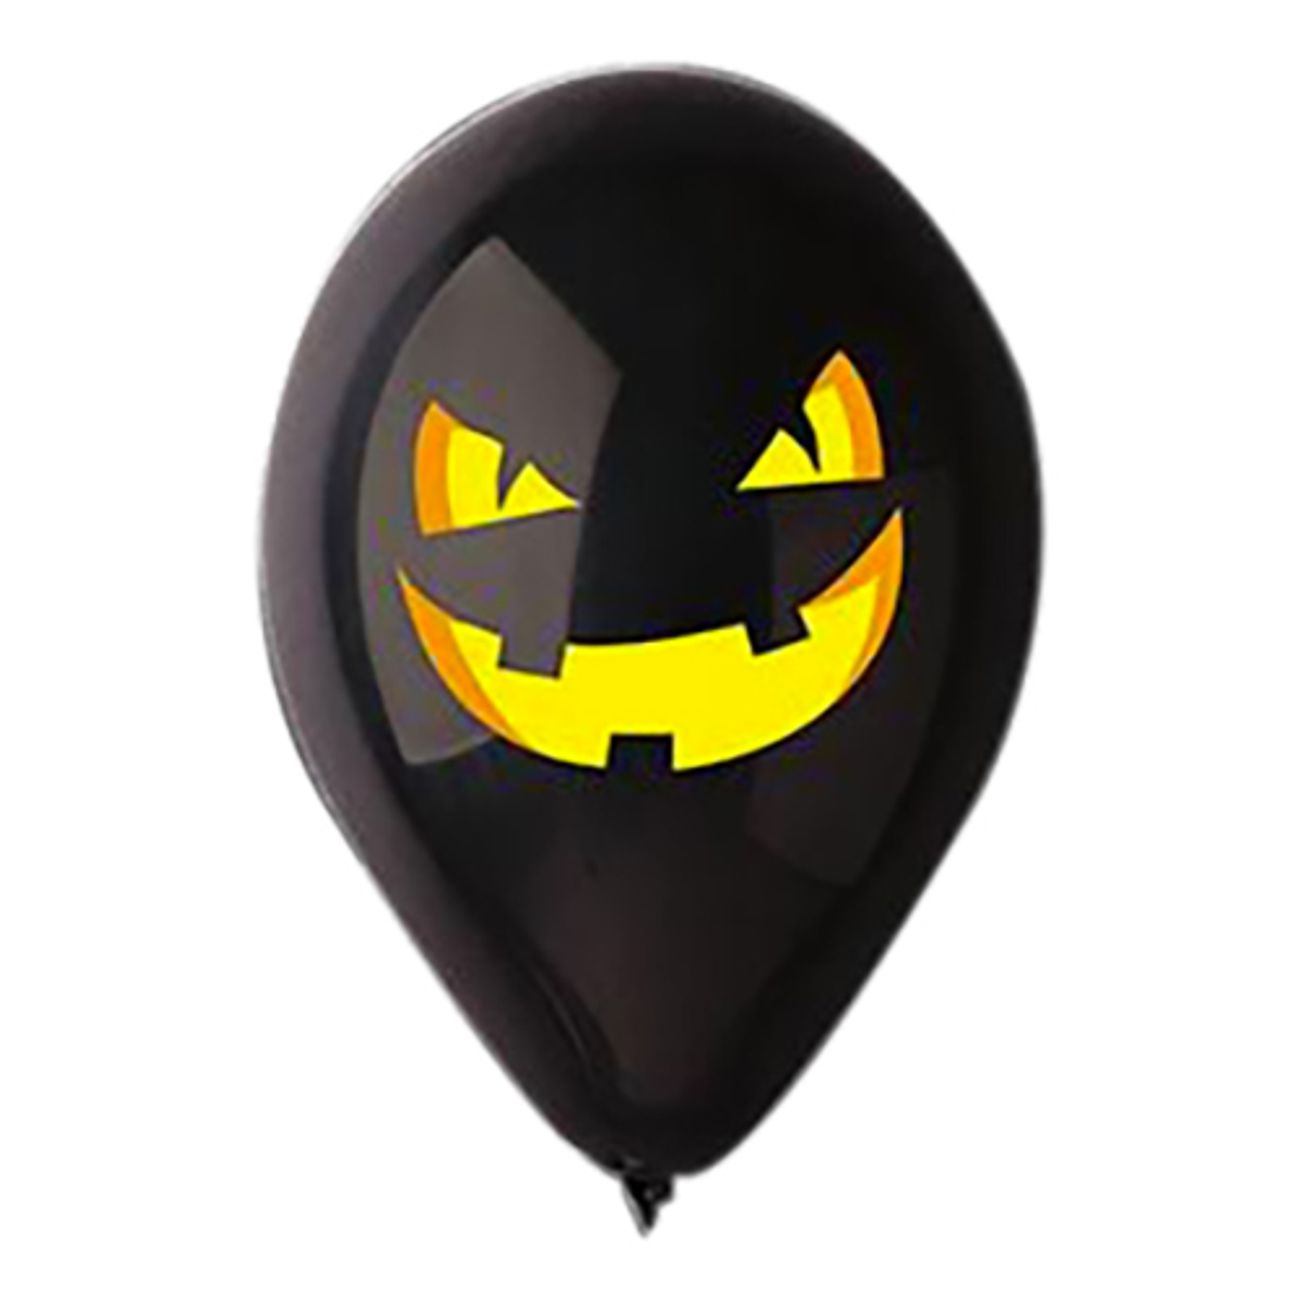 ballonger-halloween-pumpa-svart-1